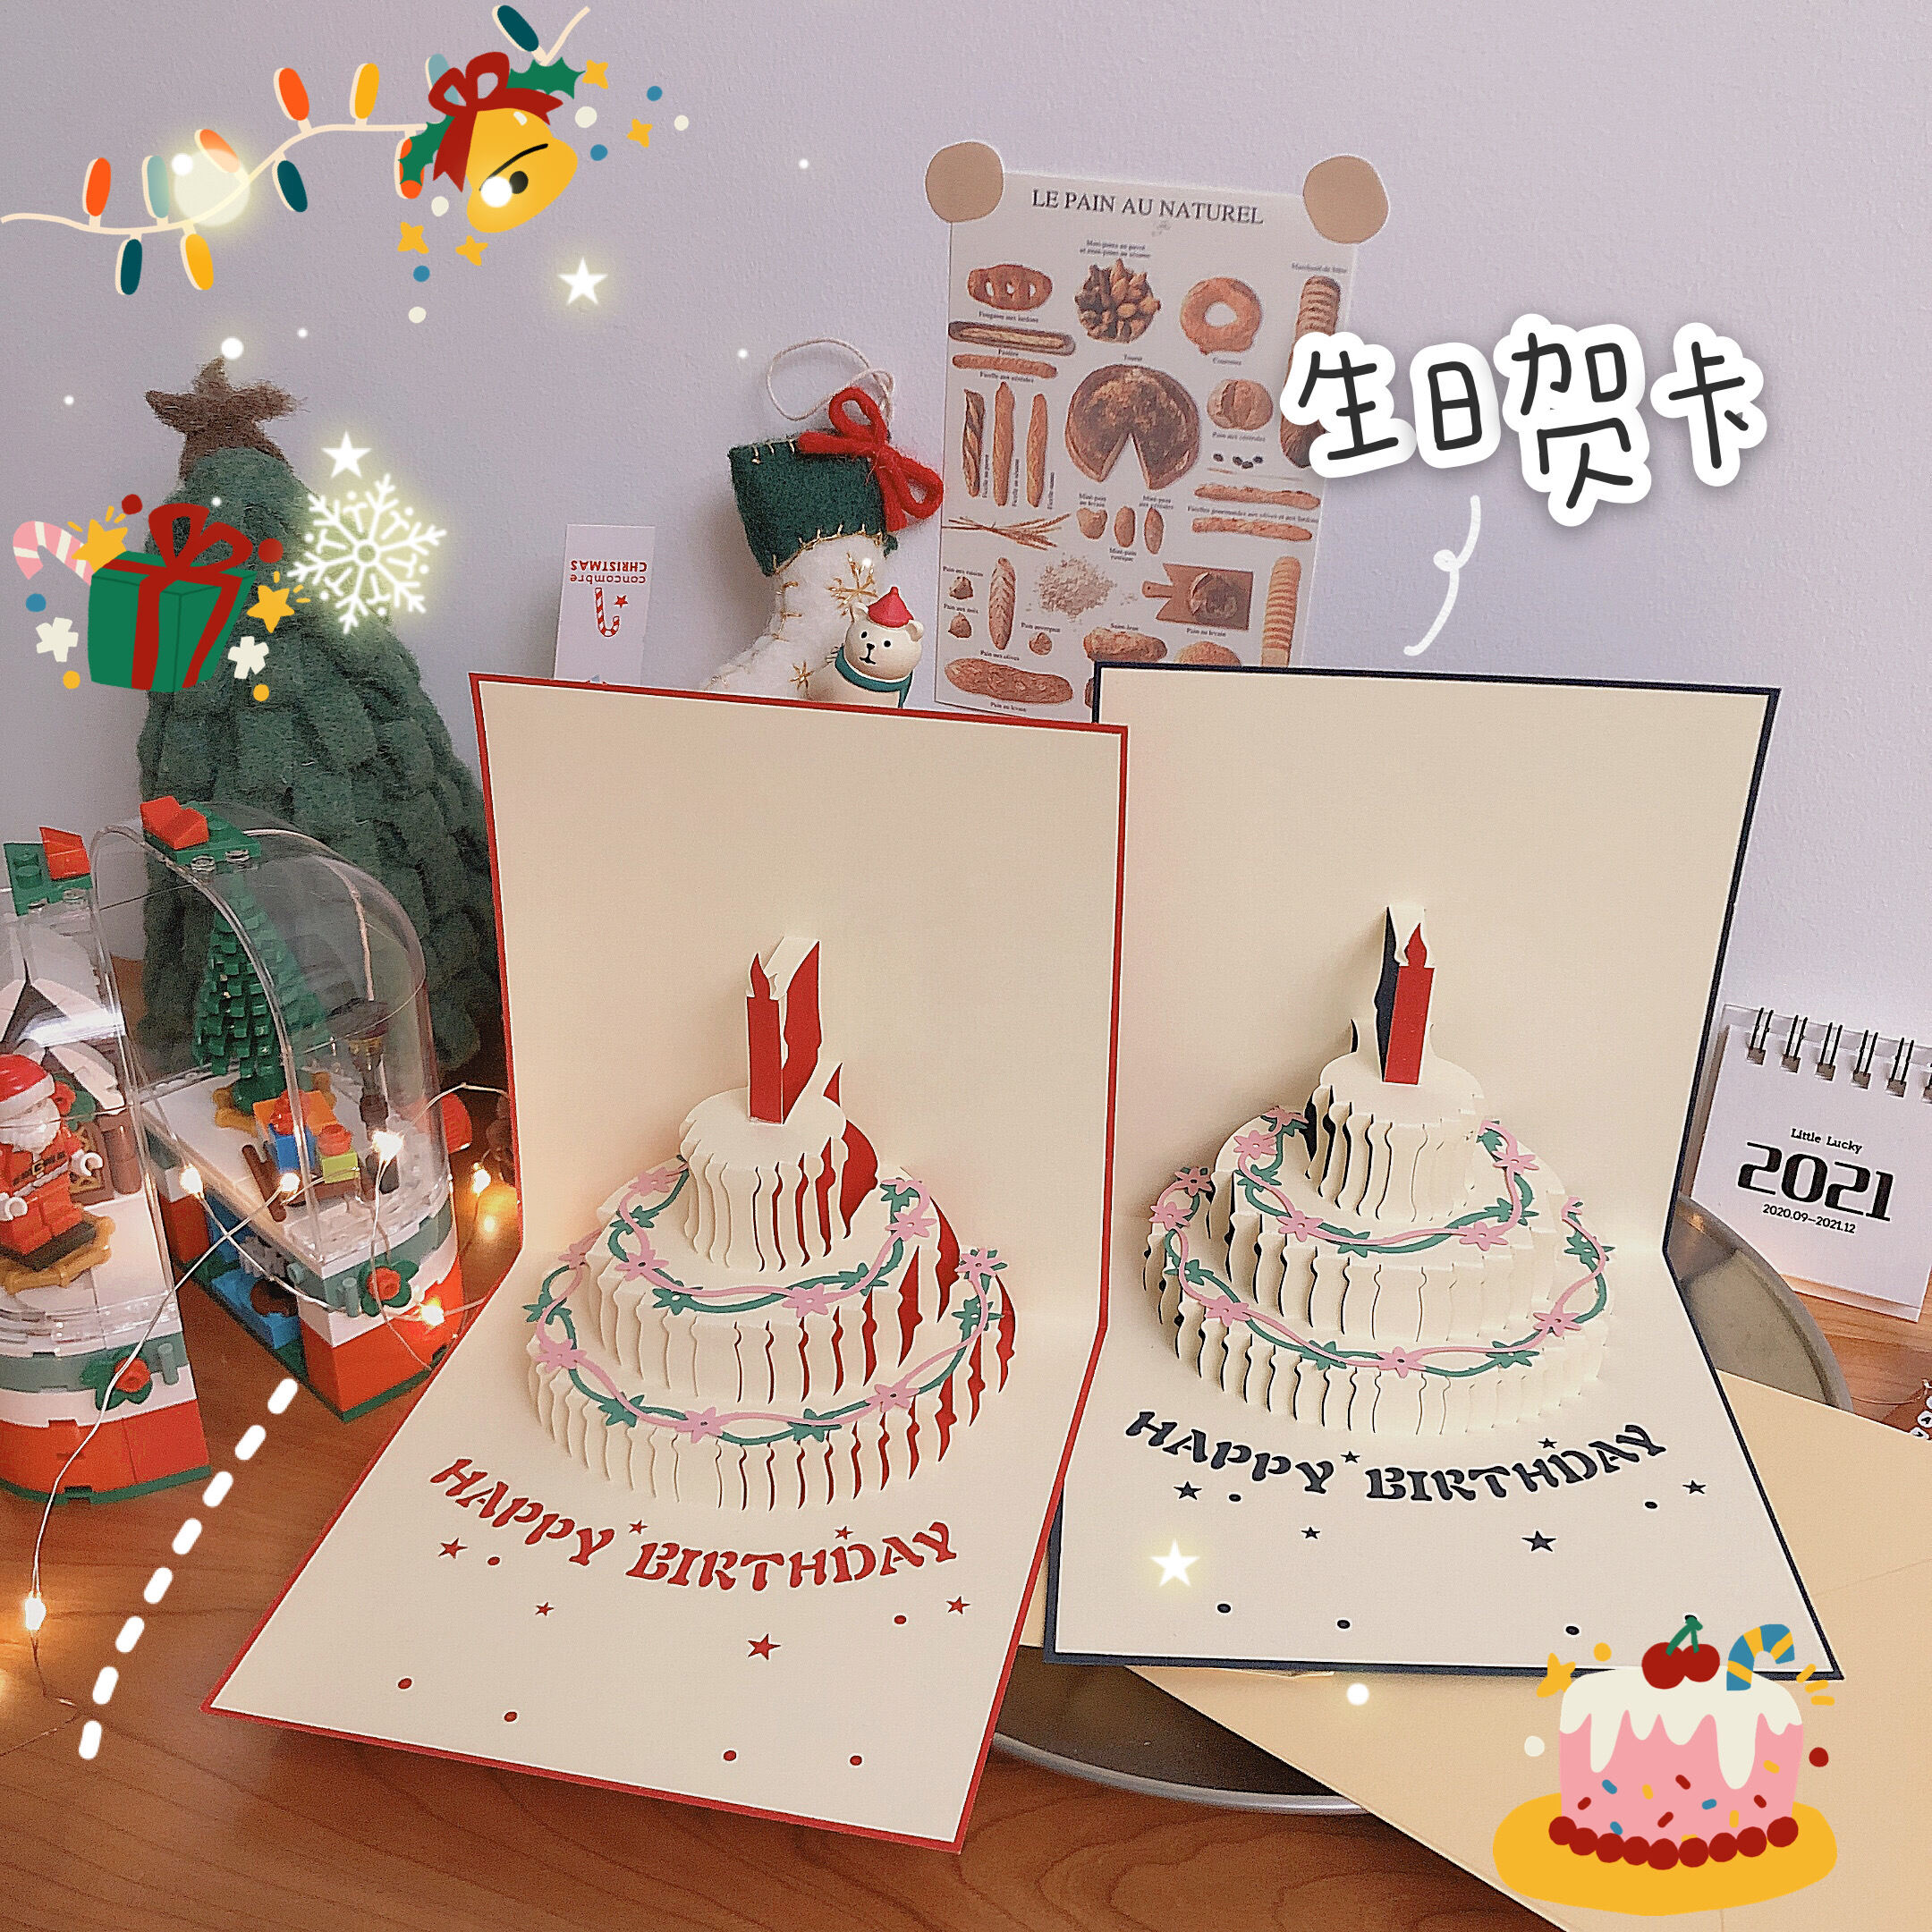 Hãy tạo ấn tượng cho người nhận thiệp sinh nhật bằng những kiểu gấp độc đáo. Thiệp sinh nhật bánh ba chiều kiểu gấp Hàn Quốc 3D được làm thủ công tỉ mỉ và đầy tinh tế. Hình ảnh sinh động của những chiếc bánh ba chiều chắc chắn sẽ khiến người nhận say mê và thích thú.